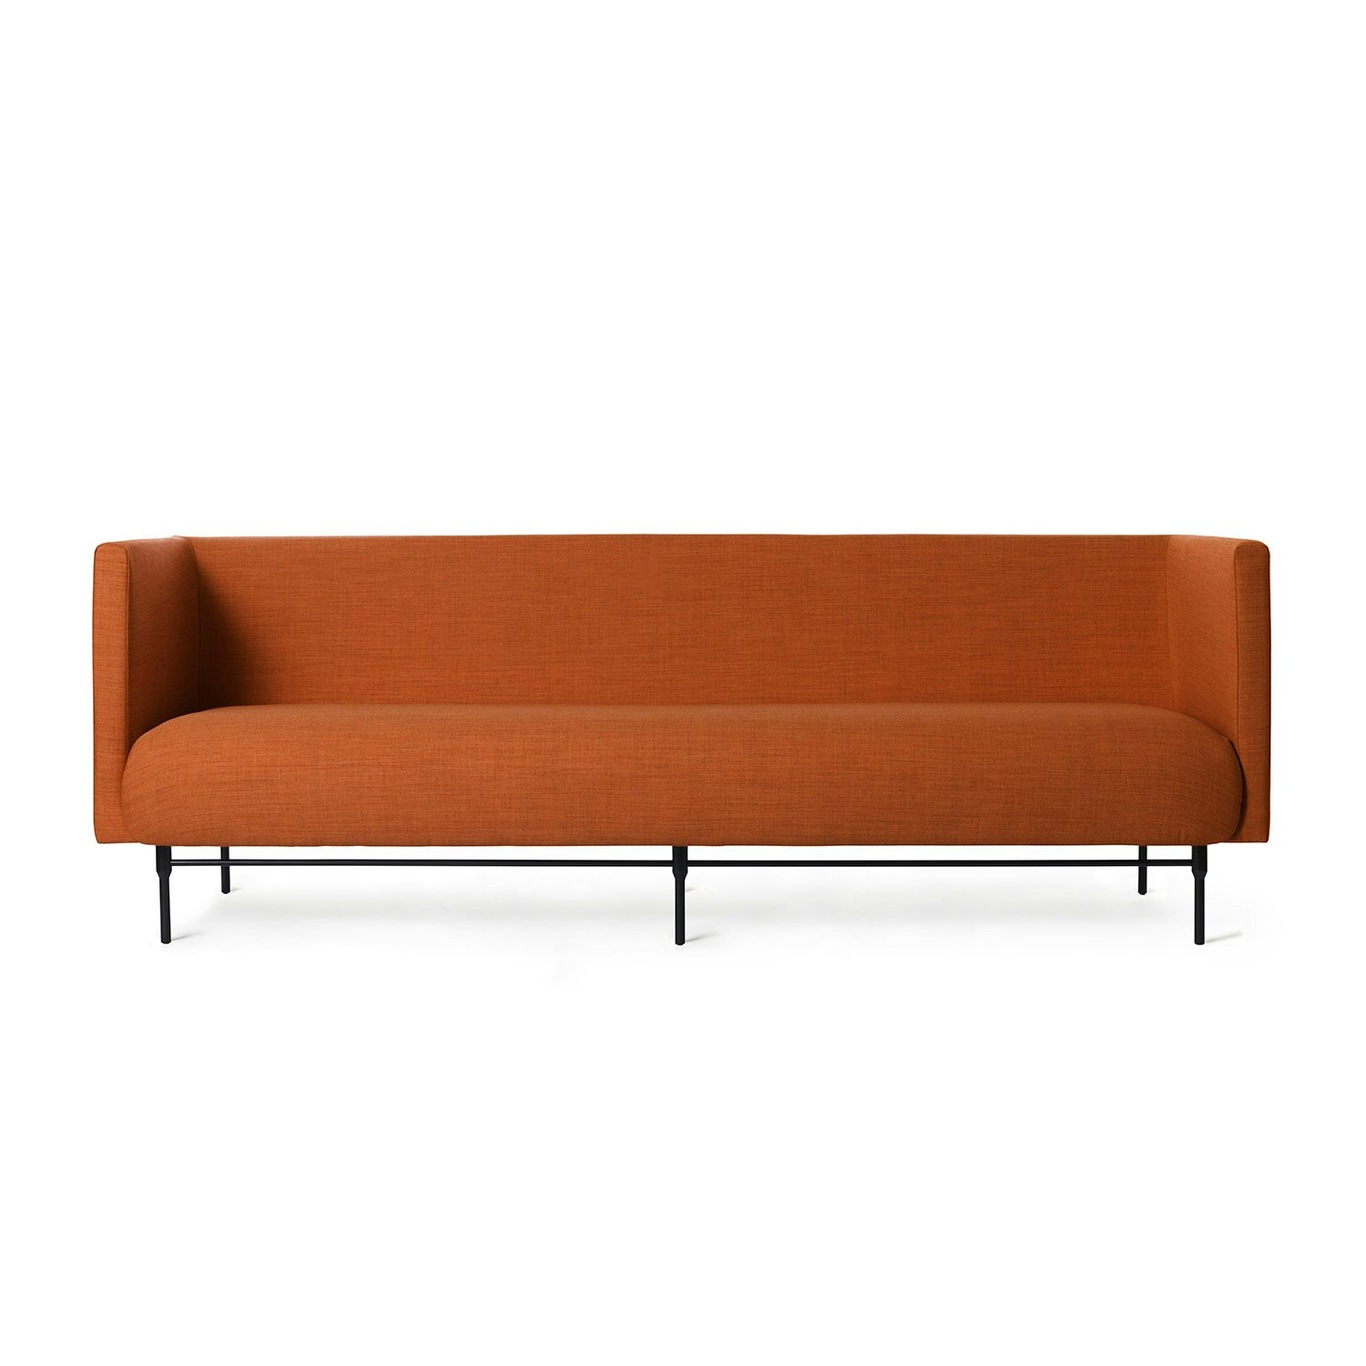 Galore 3-Seater Sofa, Burnt orange